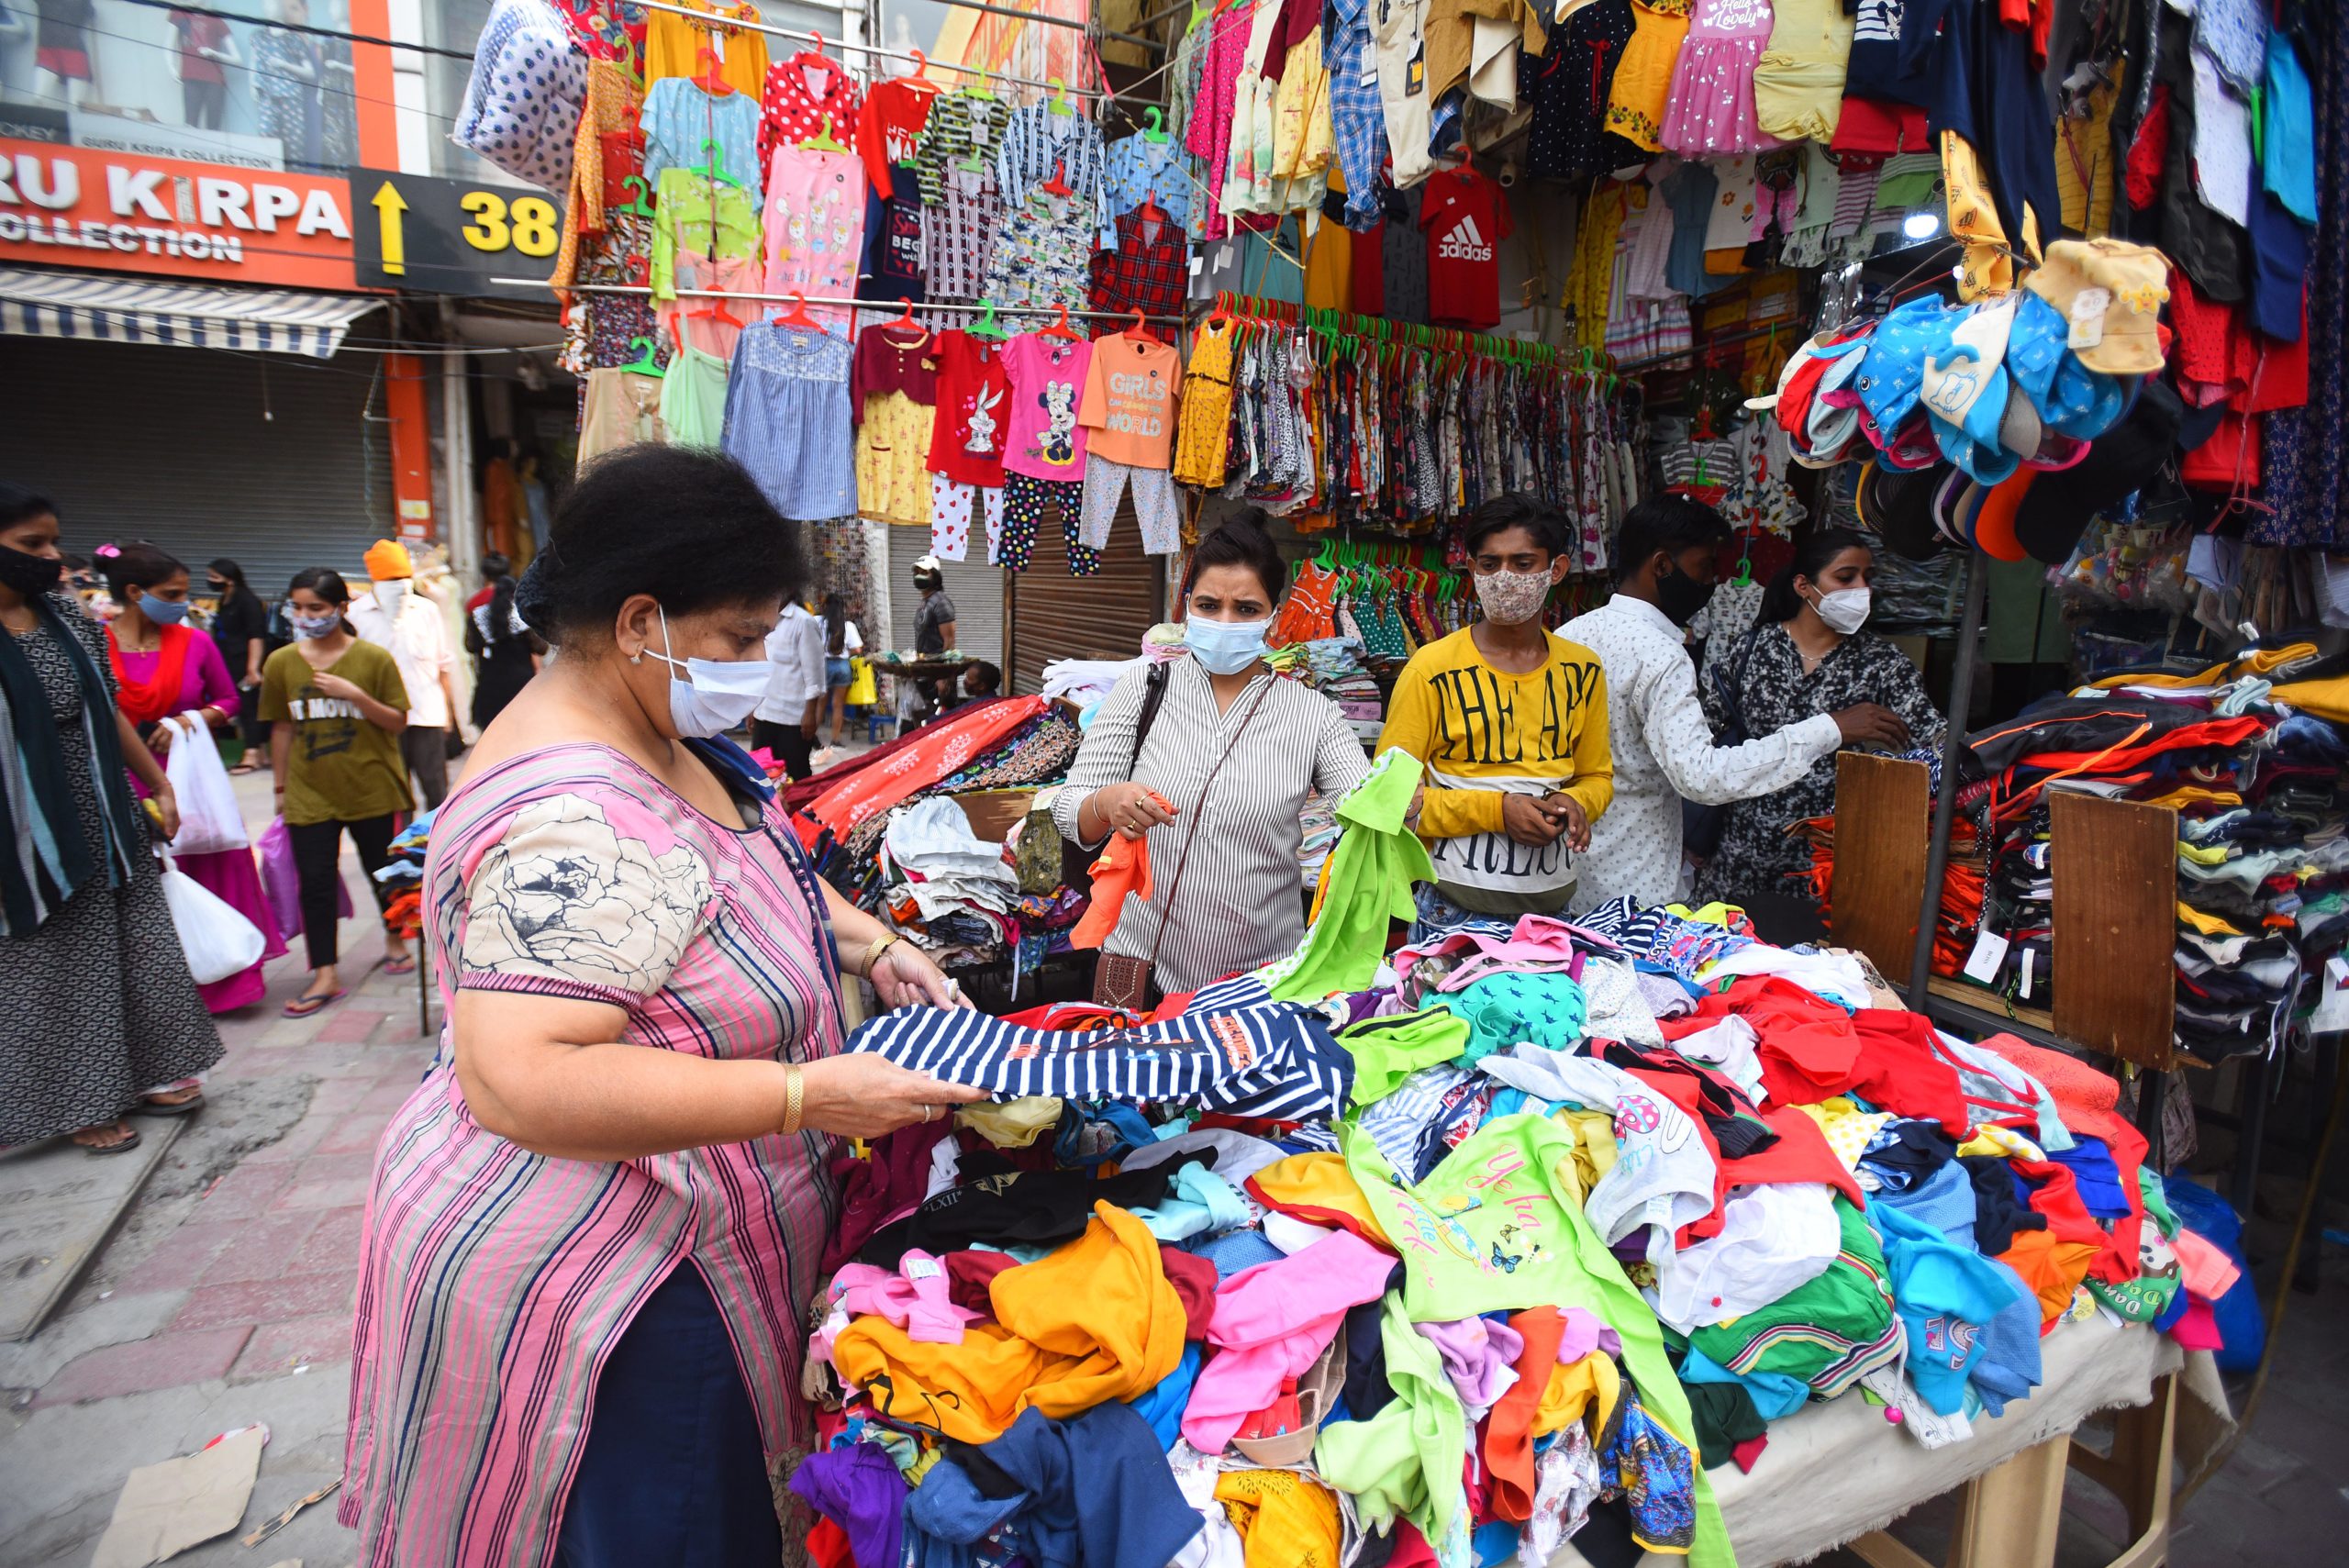 Covid norm violations: Delhi govt closes Lajpat Nagar market till further orders